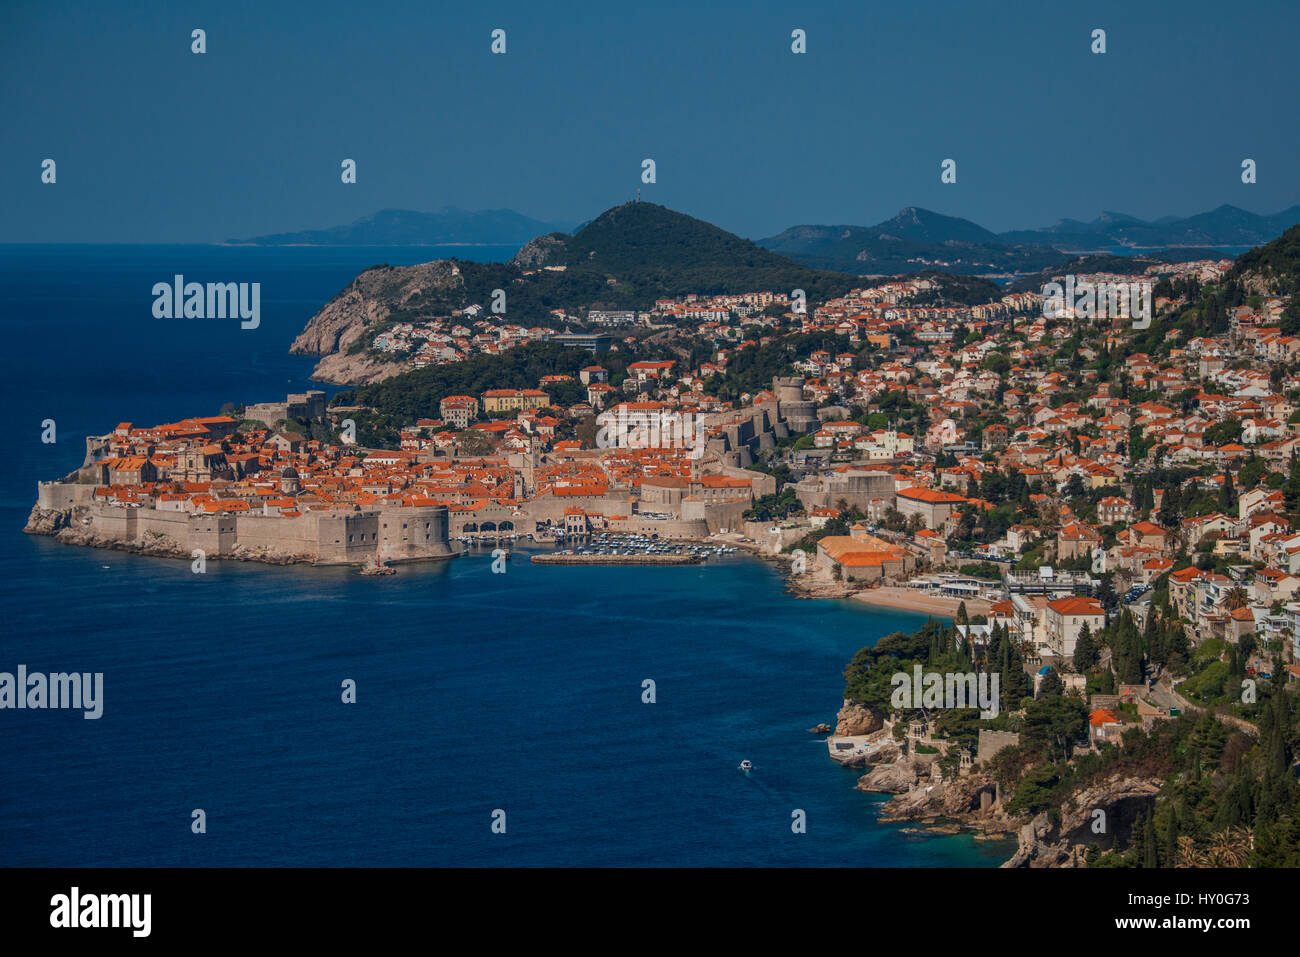 La ville médiévale fortifiée de Dubrovnik, sur la côte dalmate de la Croatie, vu de la route de Cavtat et l'aéroport. Banque D'Images